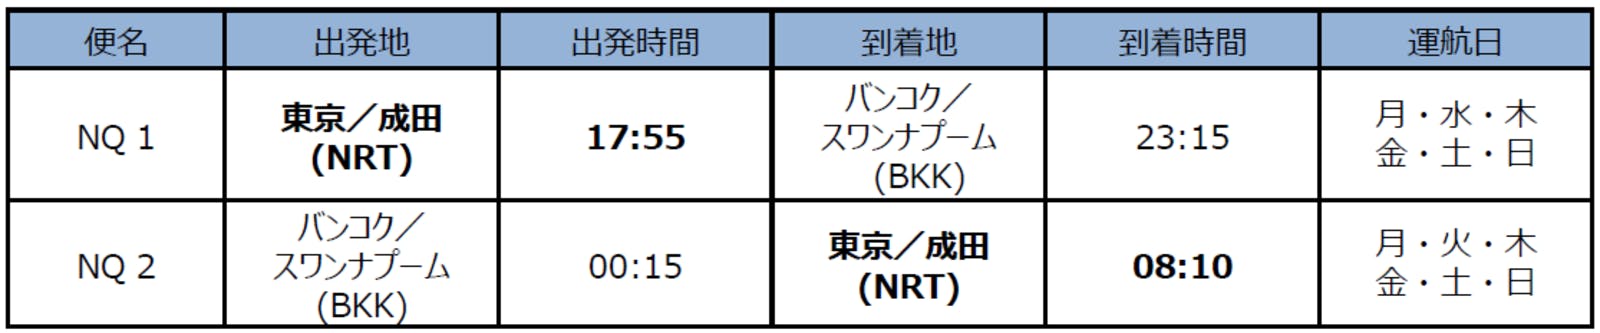 ANAの新LCC「AirJapan」運航スケジュール